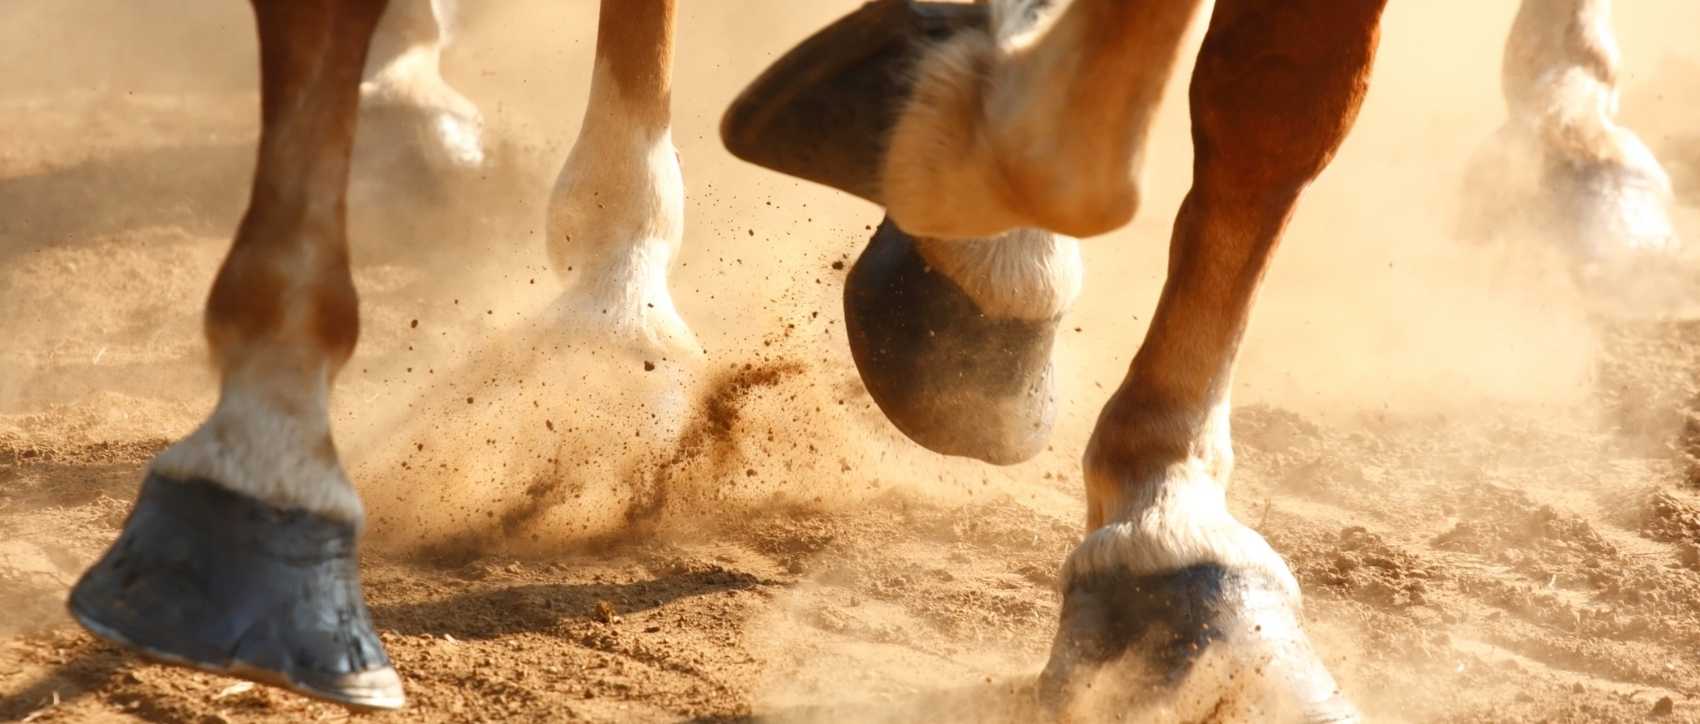 Les 5 erreurs à éviter pour l'entretien du pied d'un cheval, by Pauline